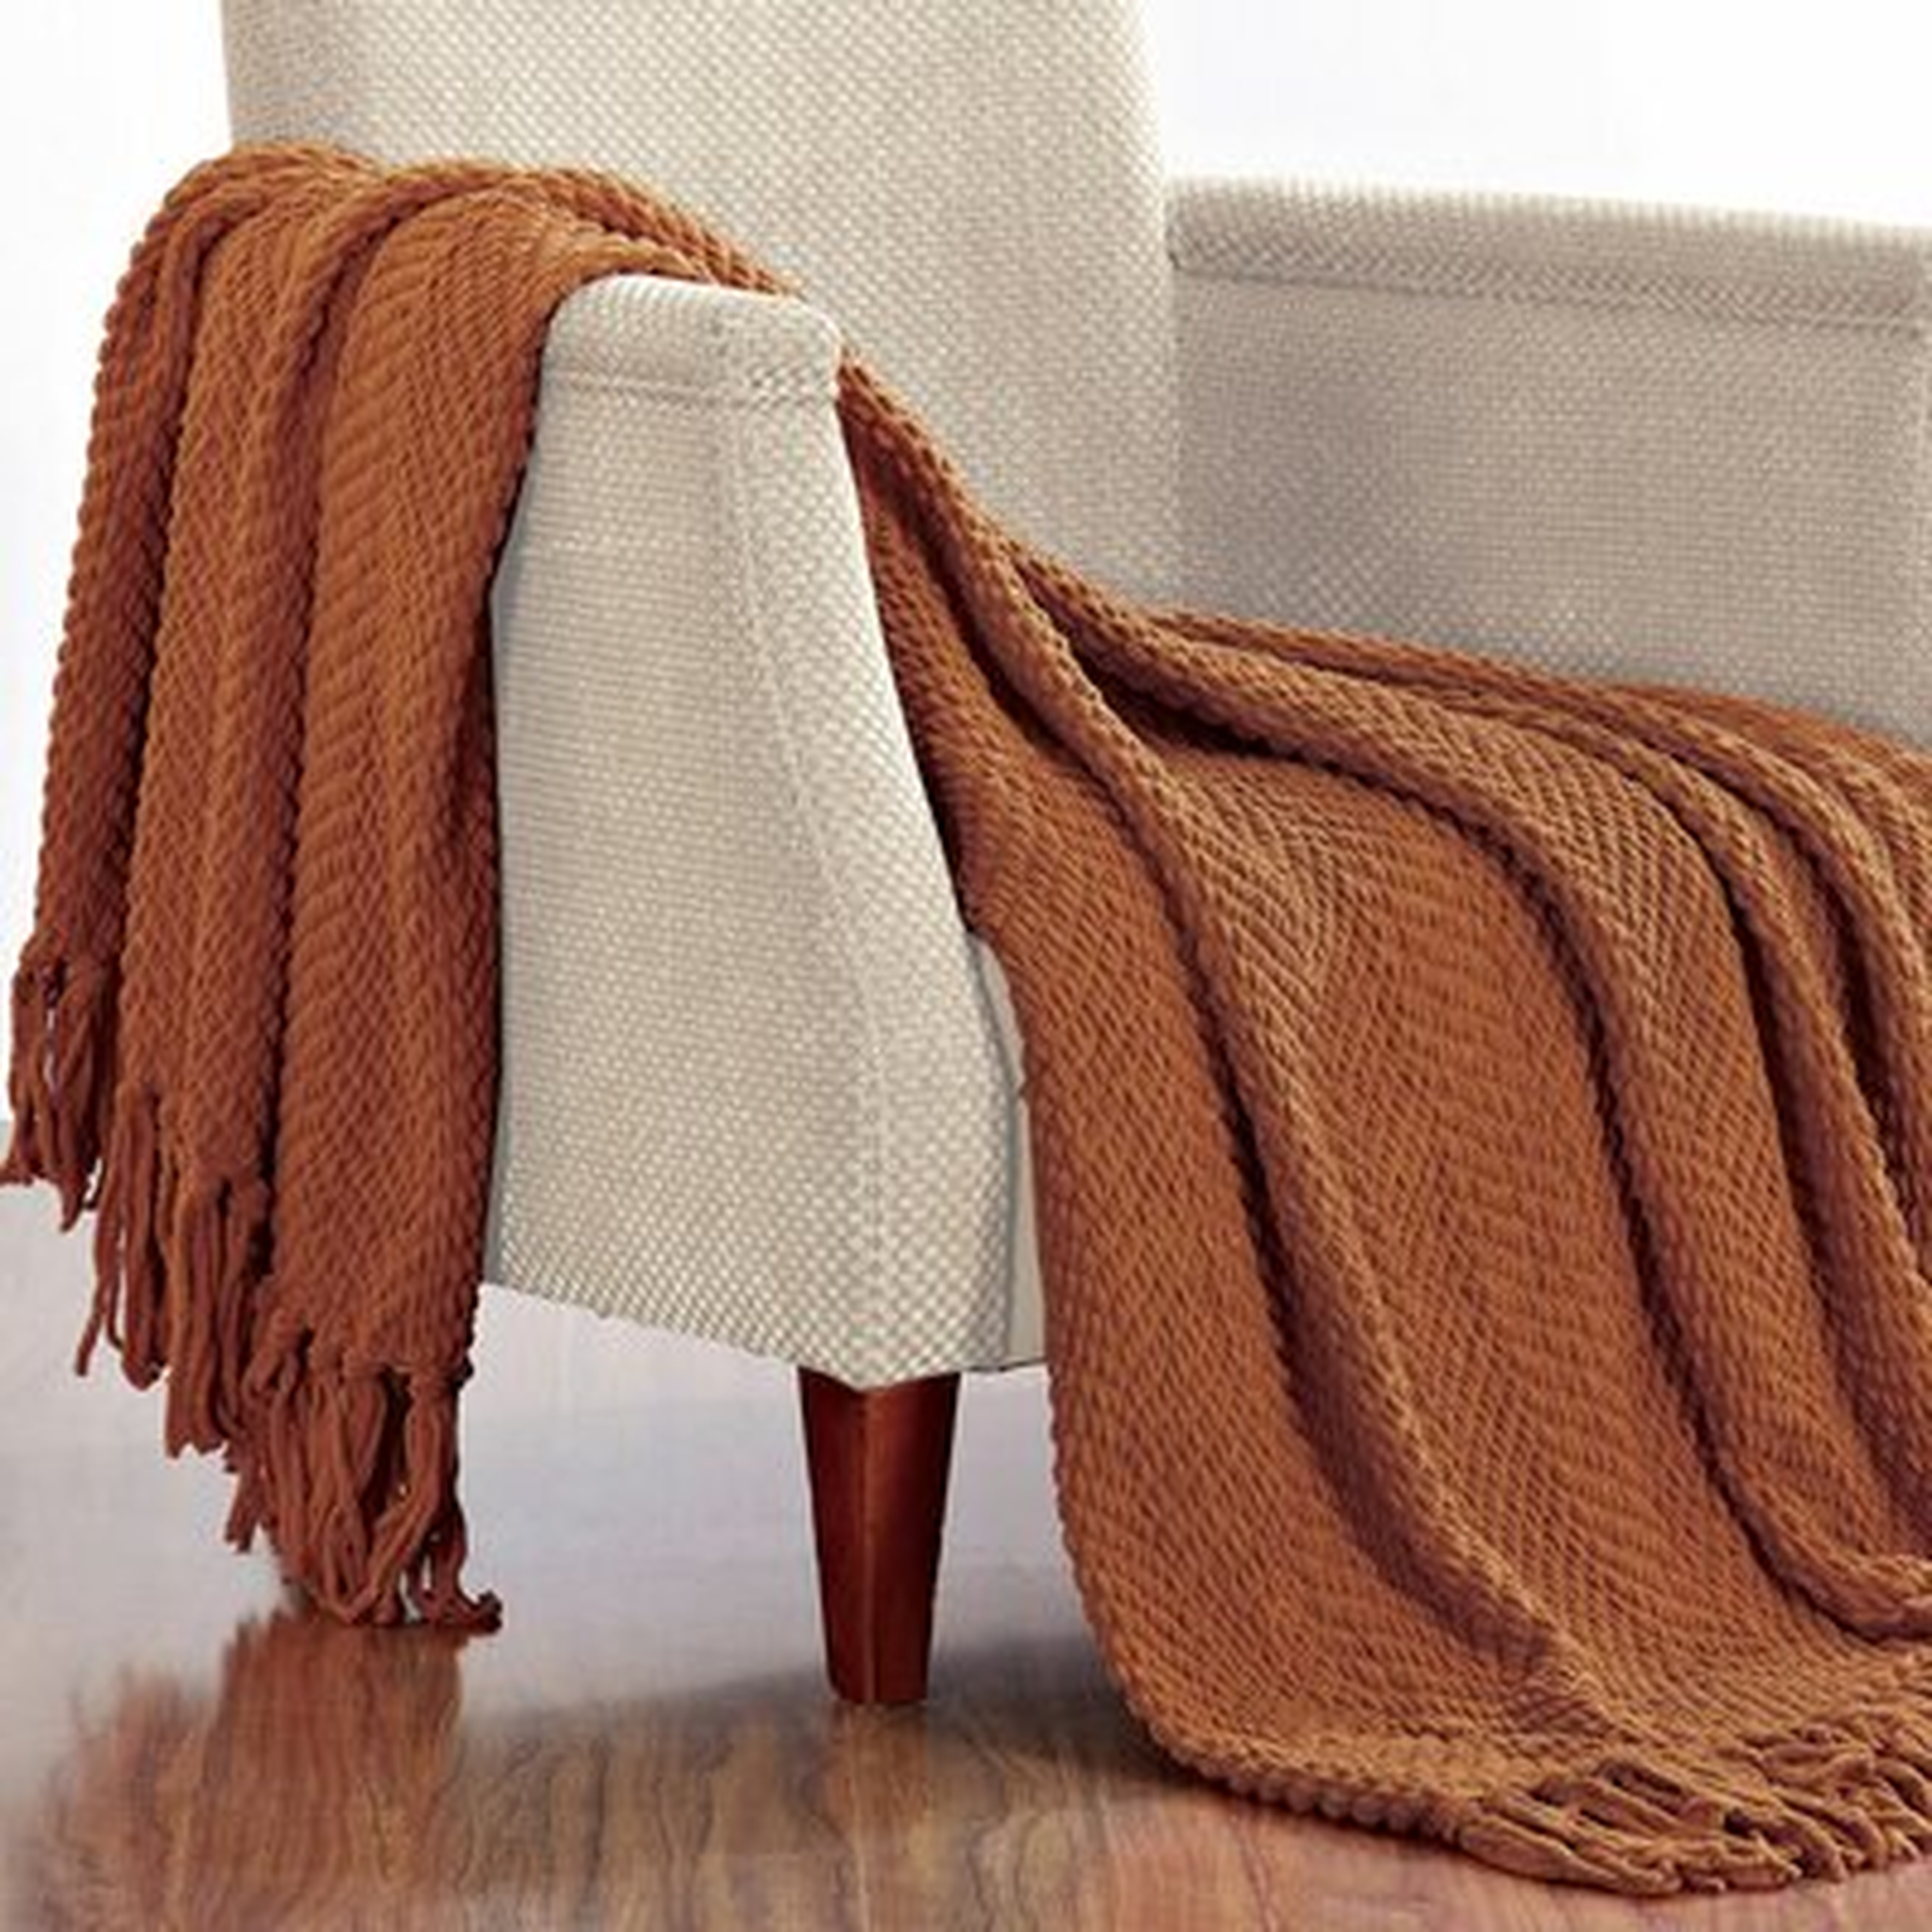 Nader Tweed Knitted-Design Throw - Birch Lane